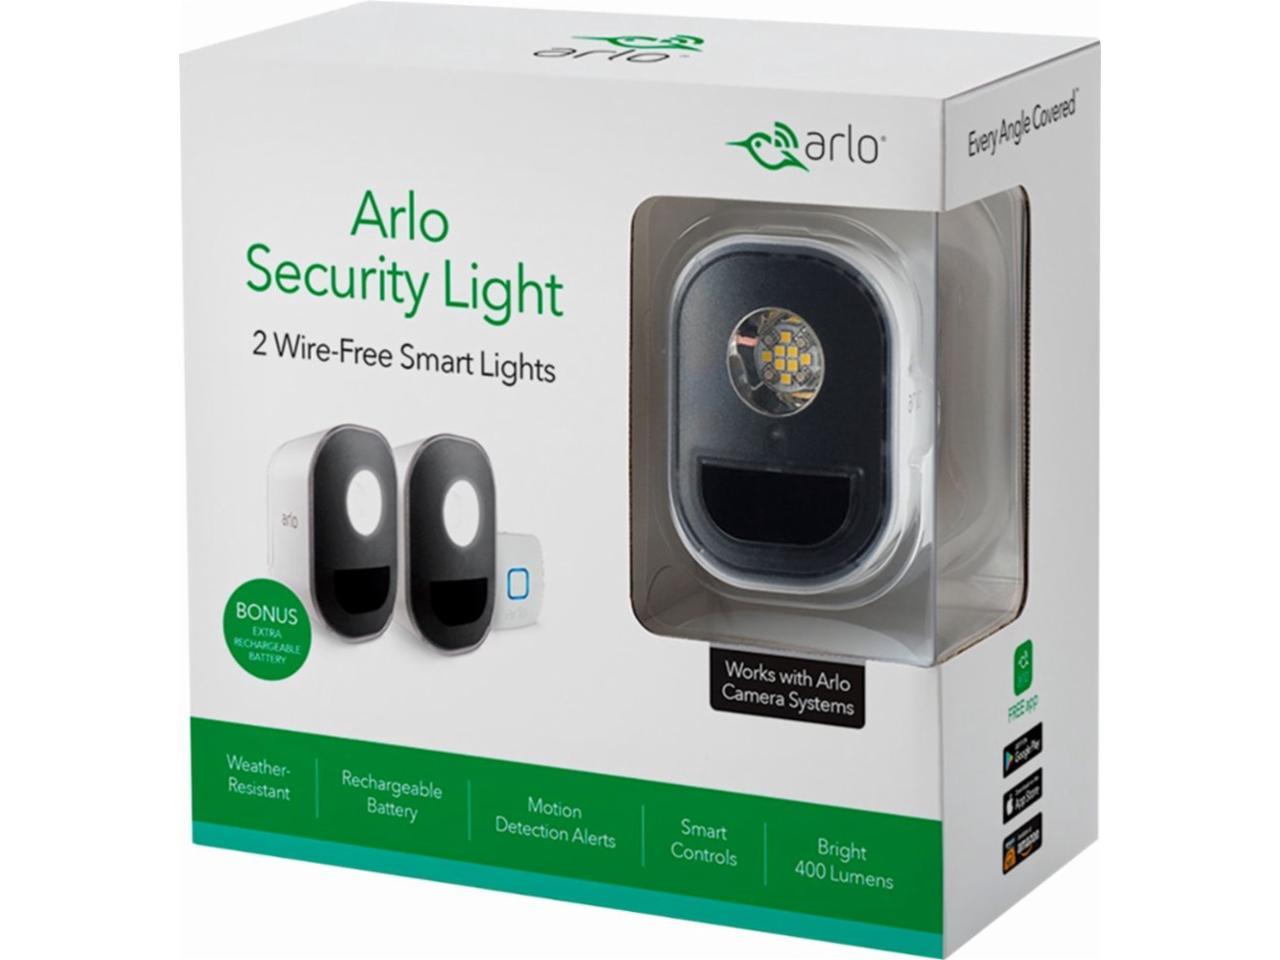 arlo security light price